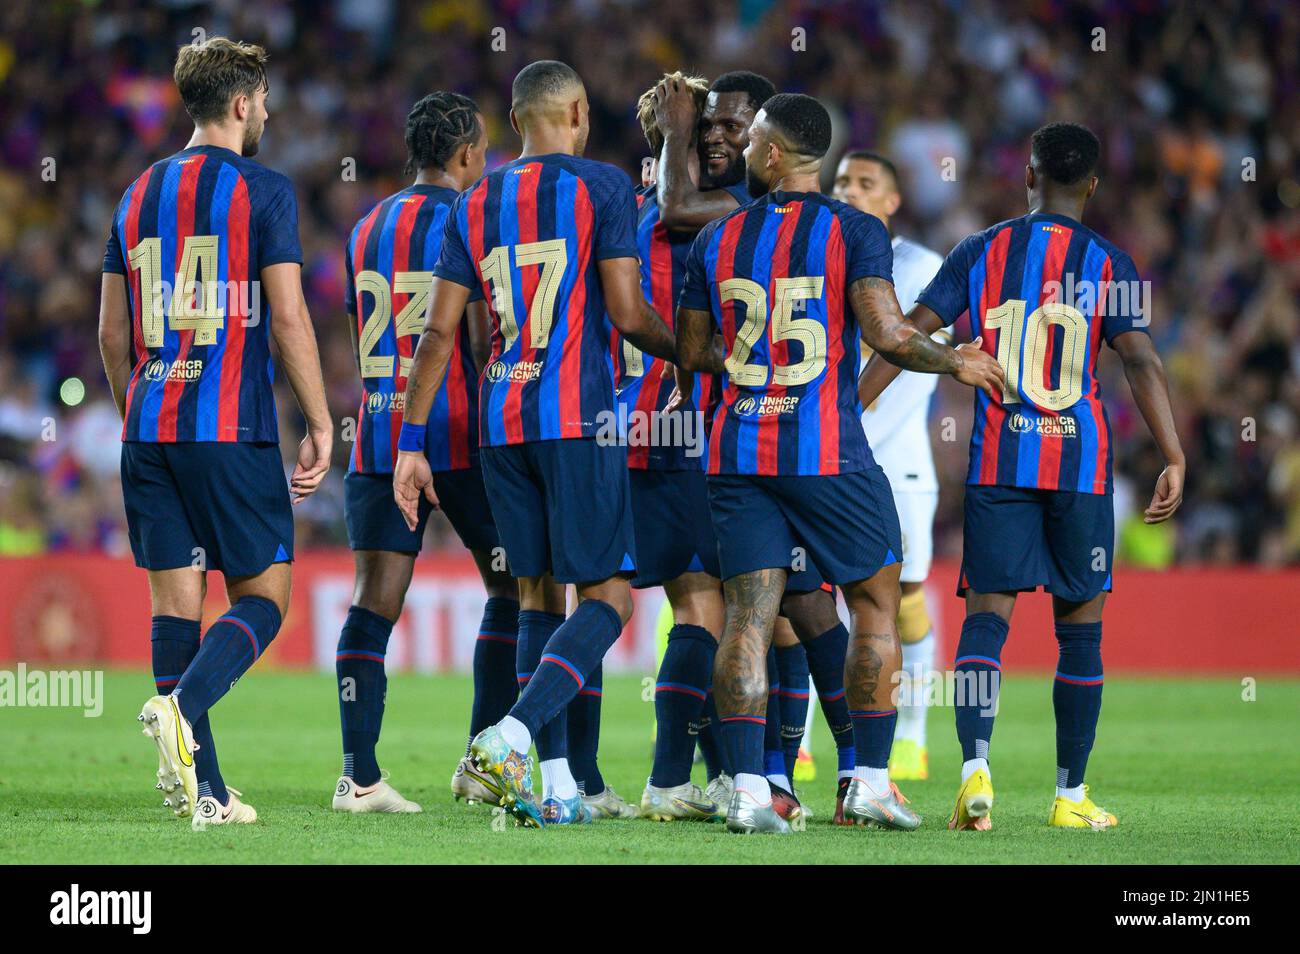 Frankie De Jong del FC Barcelona celebra un gol durante el Torfeo Joan Gamper entre el FC Barcelona y el Pumas UNAM en el Camp Nou de Barcelona, España. Foto de stock